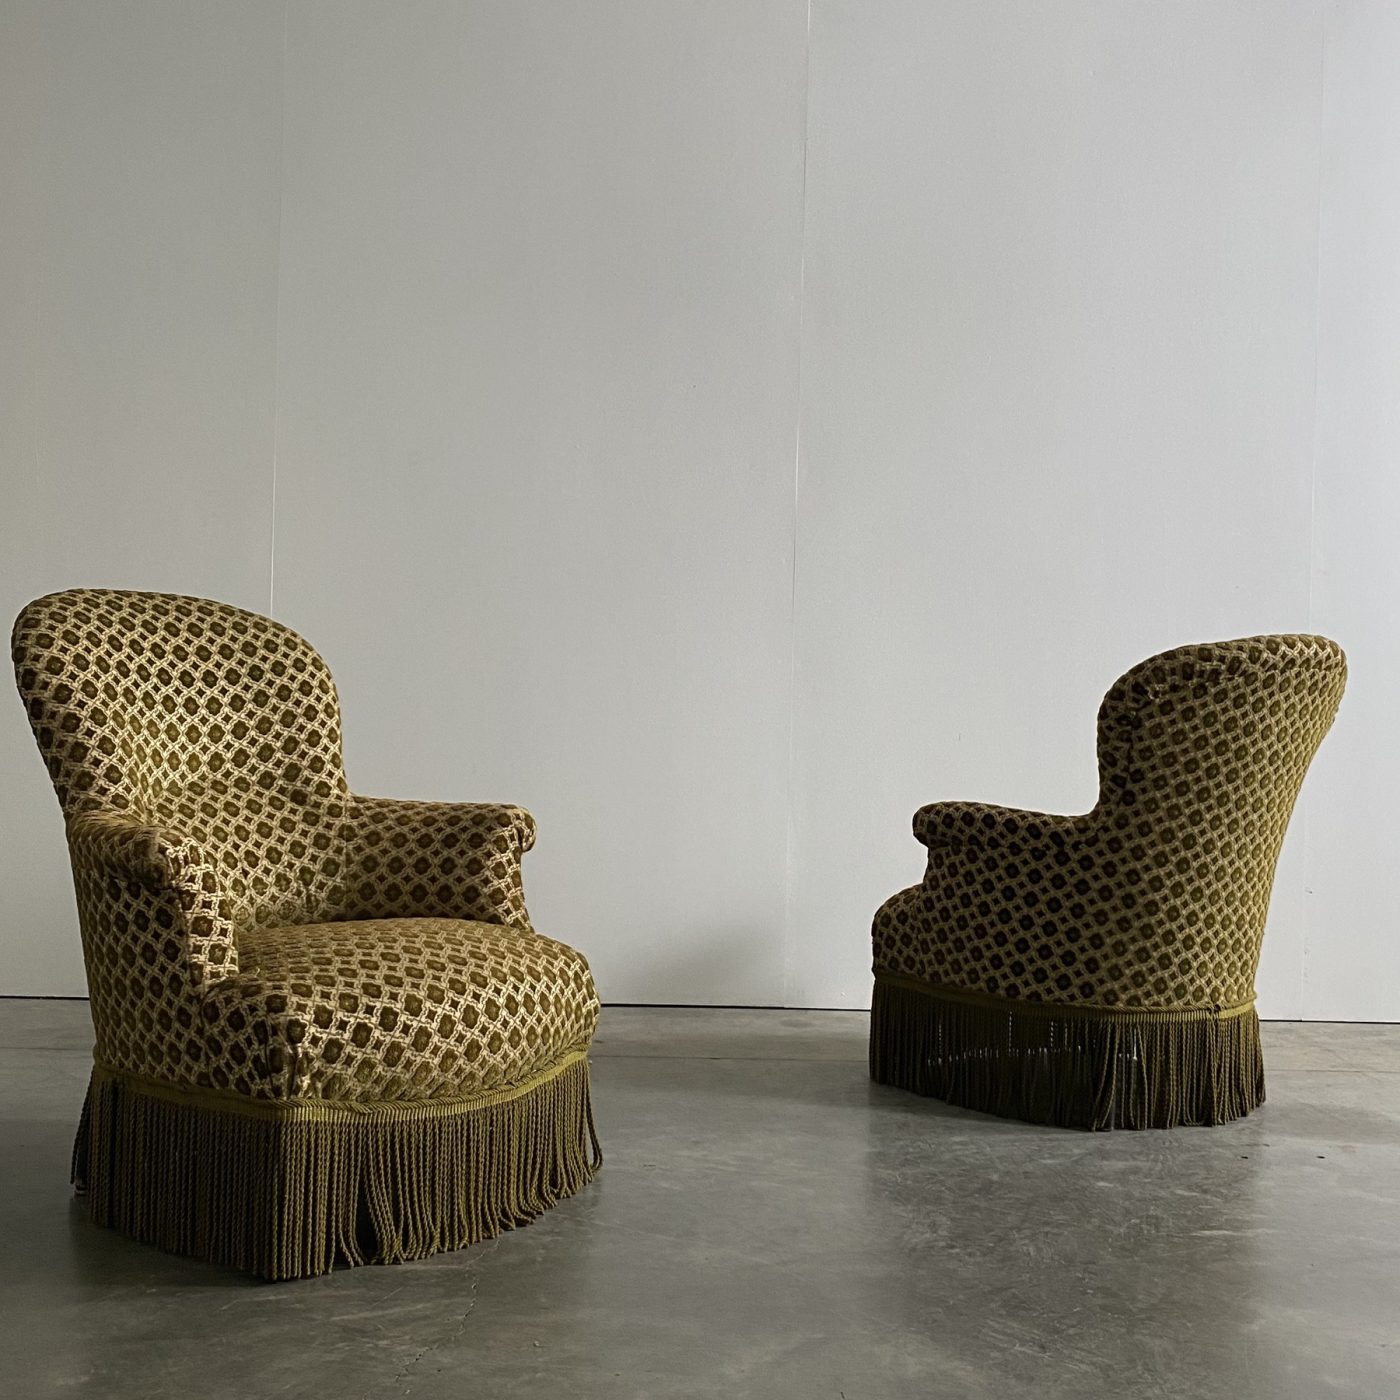 objet-vagabond-napoleon-armchairs0004